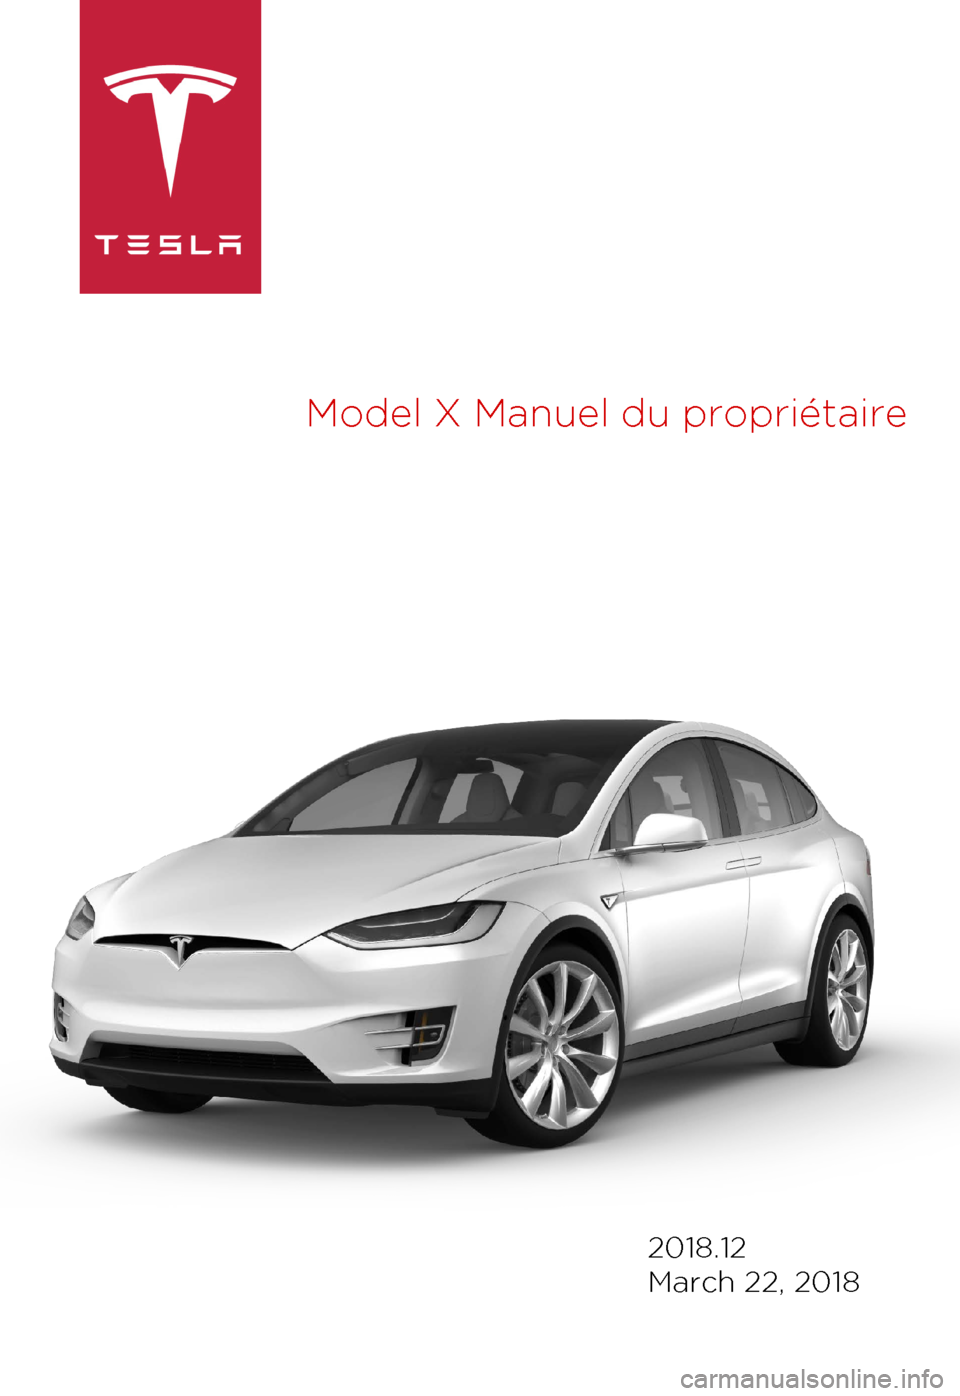 TESLA MODEL X 2018  Manuel du propriétaire (Canada) (in French)  Model 
X Manuel du propriétaire 2018.12
March 22, 2018 